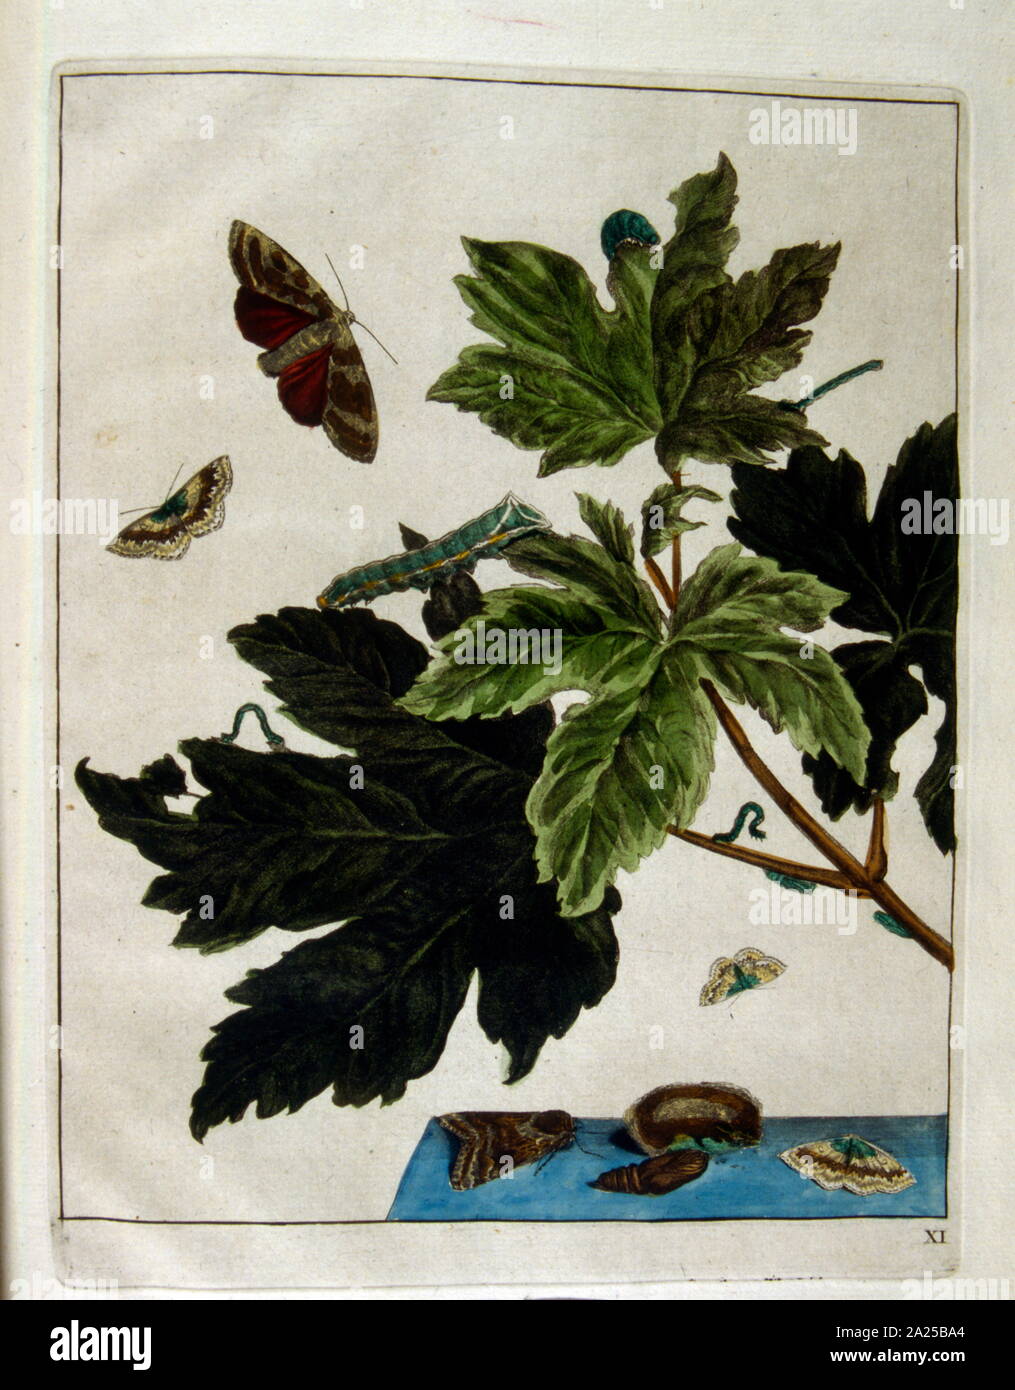 Ilustración de los Holandeses, libro de botánica, 'Naauwkeurige waarneemingen" (observaciones precisas), por L'almirante Jacob, ca. 1774 Foto de stock